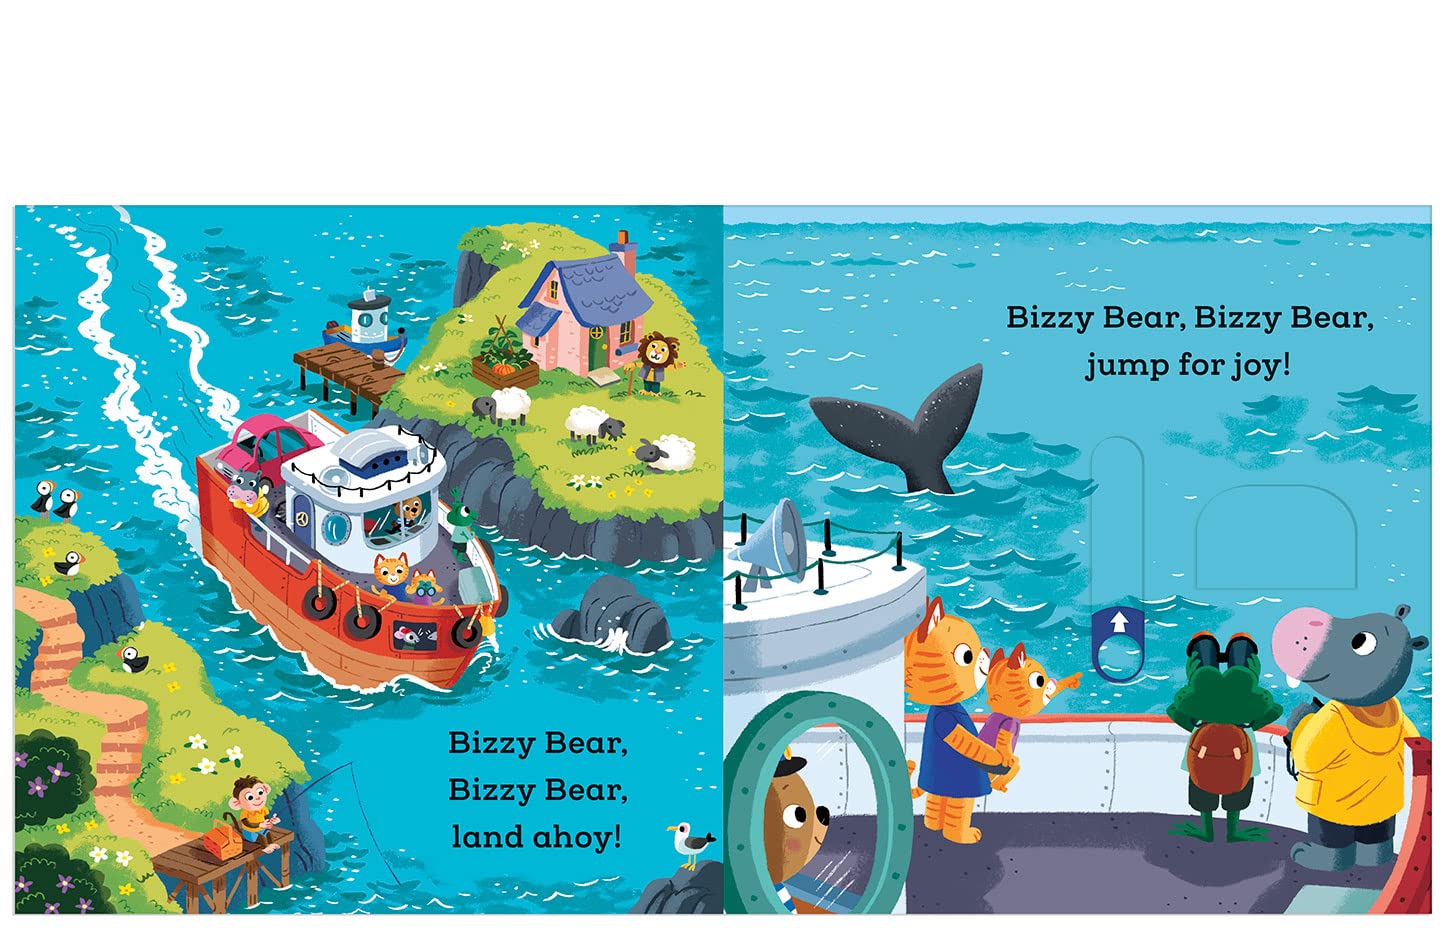 Bizzy Bear: Ship's Captain (Board Book)